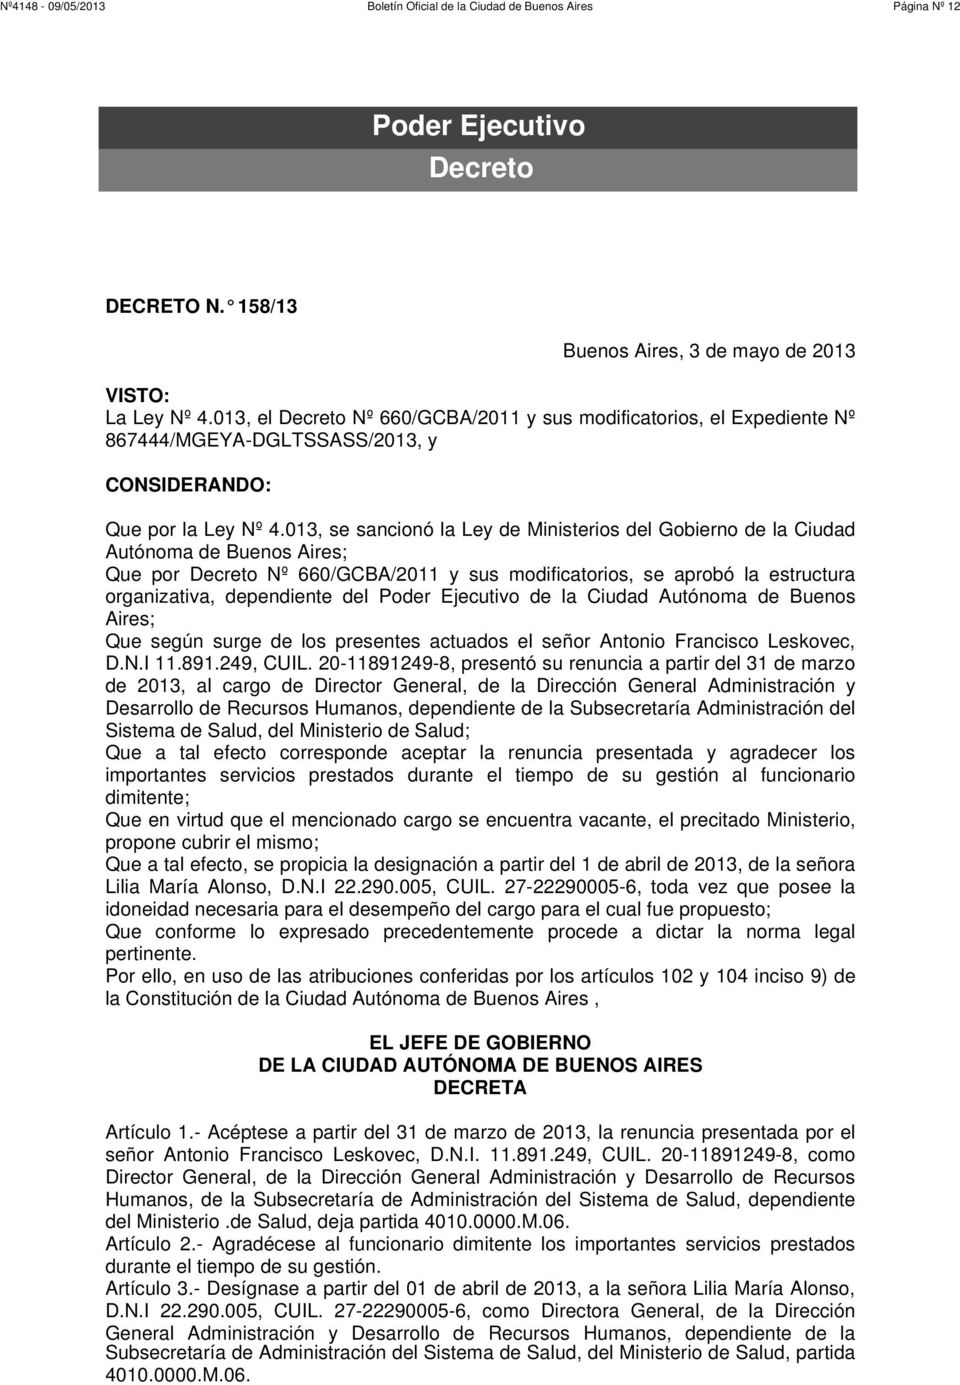 013, se sancionó la Ley de Ministerios del Gobierno de la Ciudad Autónoma de Buenos Aires; Que por Decreto Nº 660/GCBA/2011 y sus modificatorios, se aprobó la estructura organizativa, dependiente del